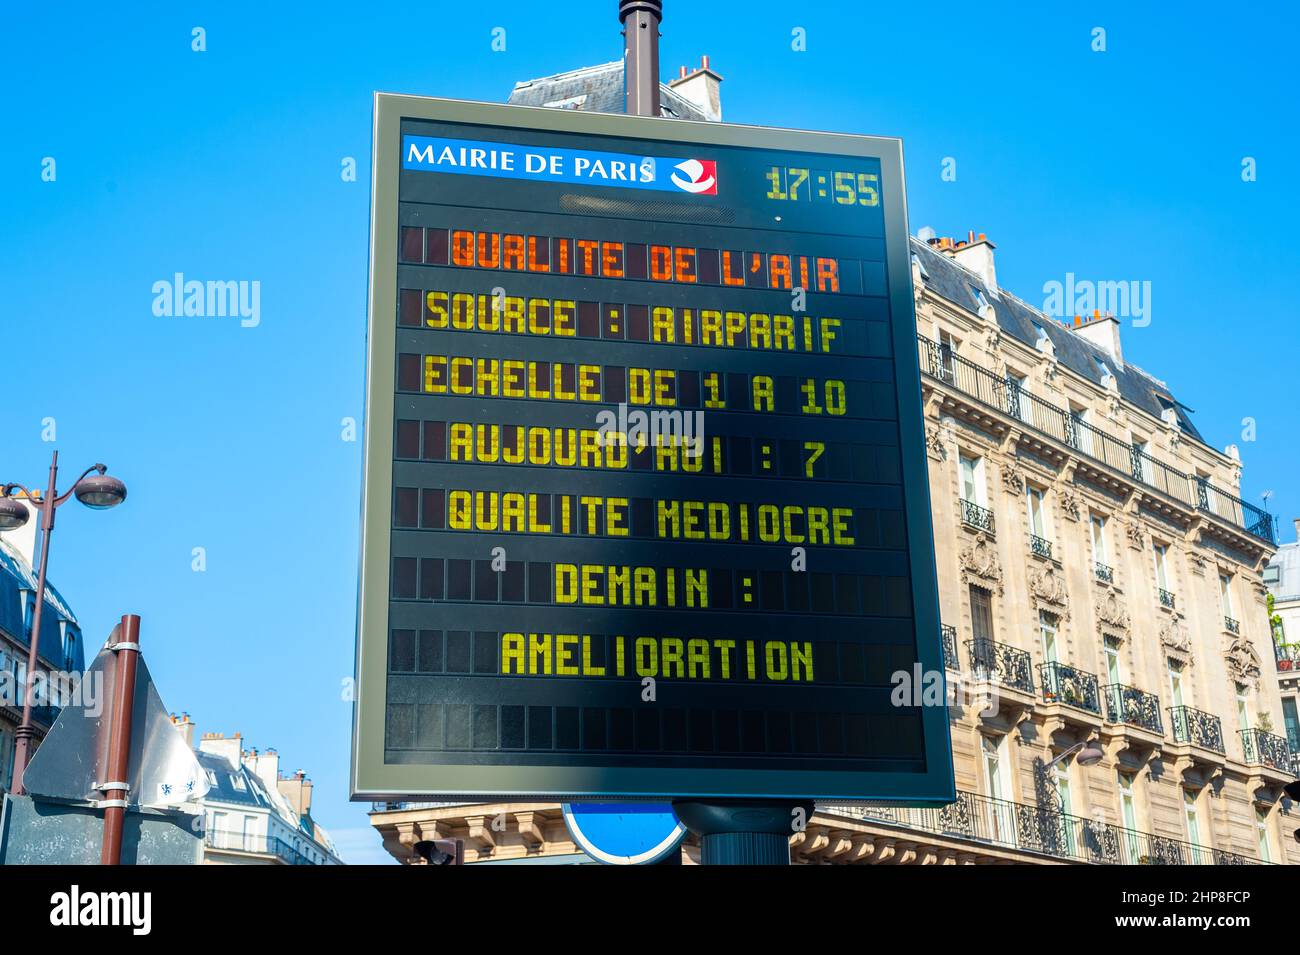 Paris, France, Detail, Panneaux Lumineux information, Mairie de Paris, Pollution Report Stock Photo